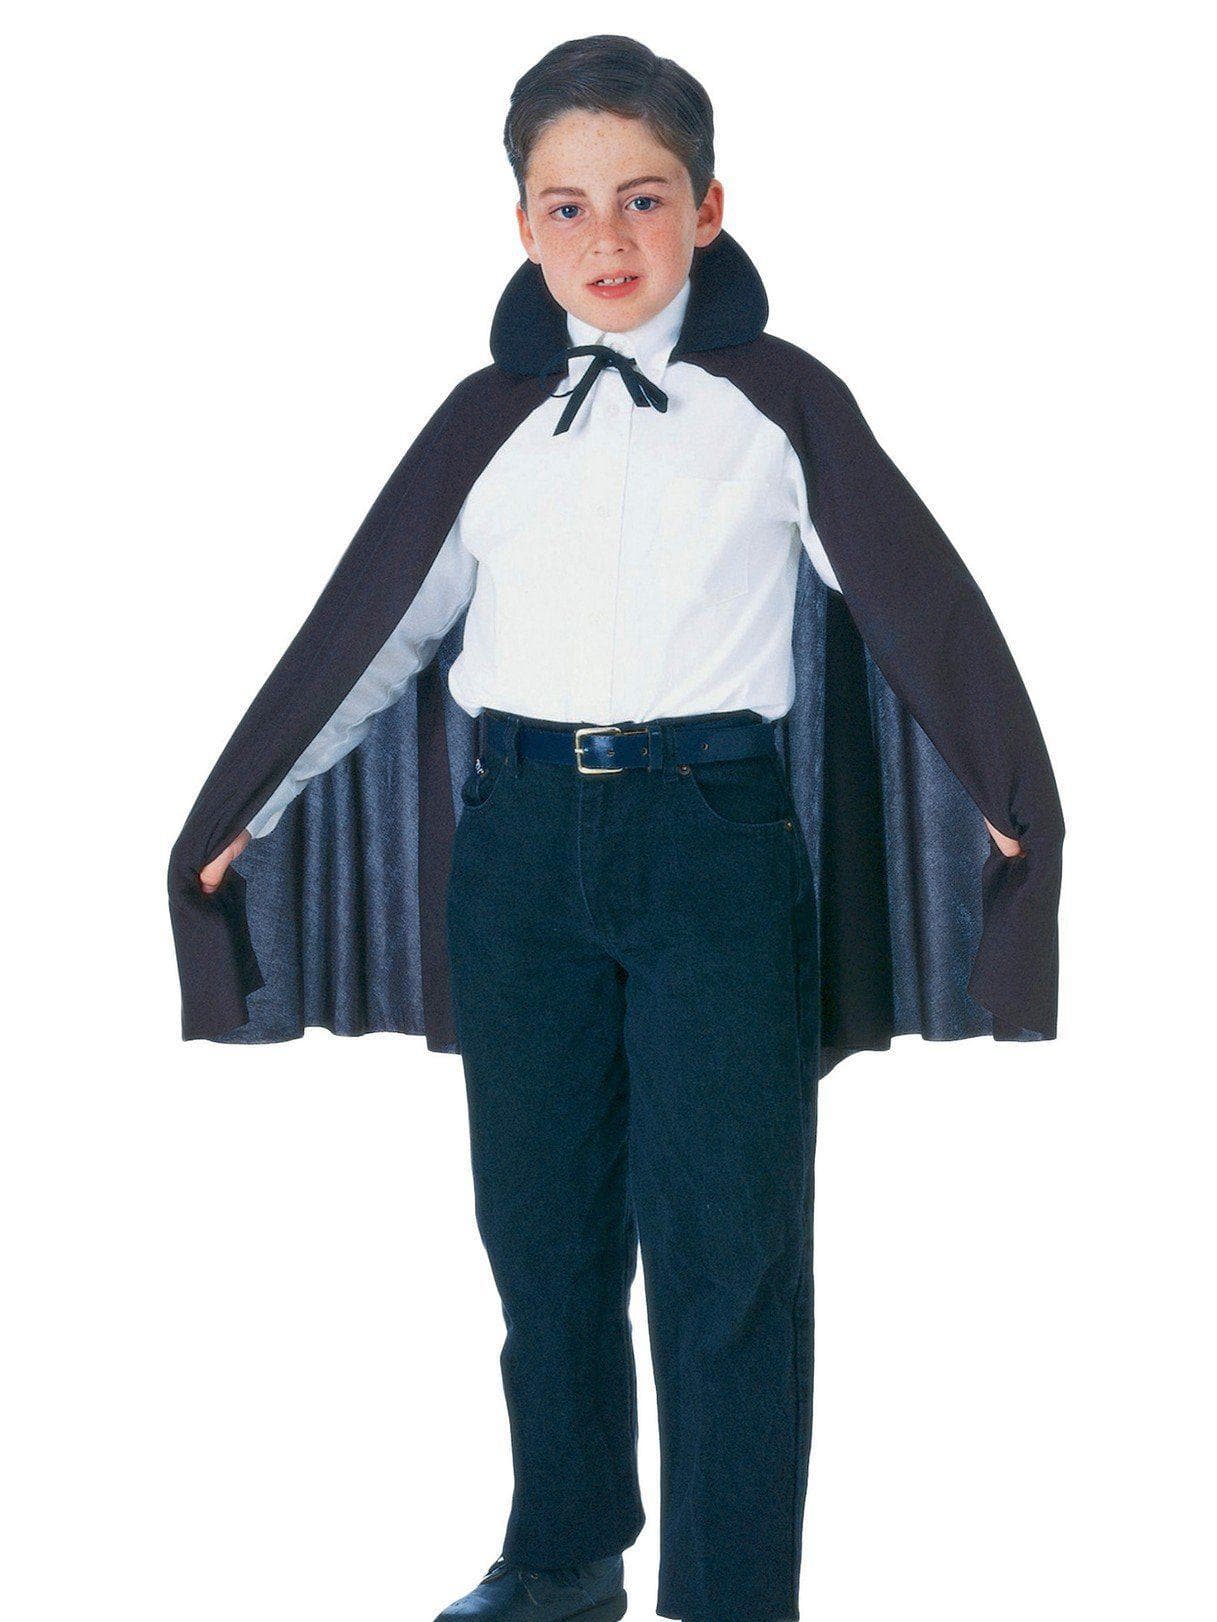 Child Cape Costume - costumes.com